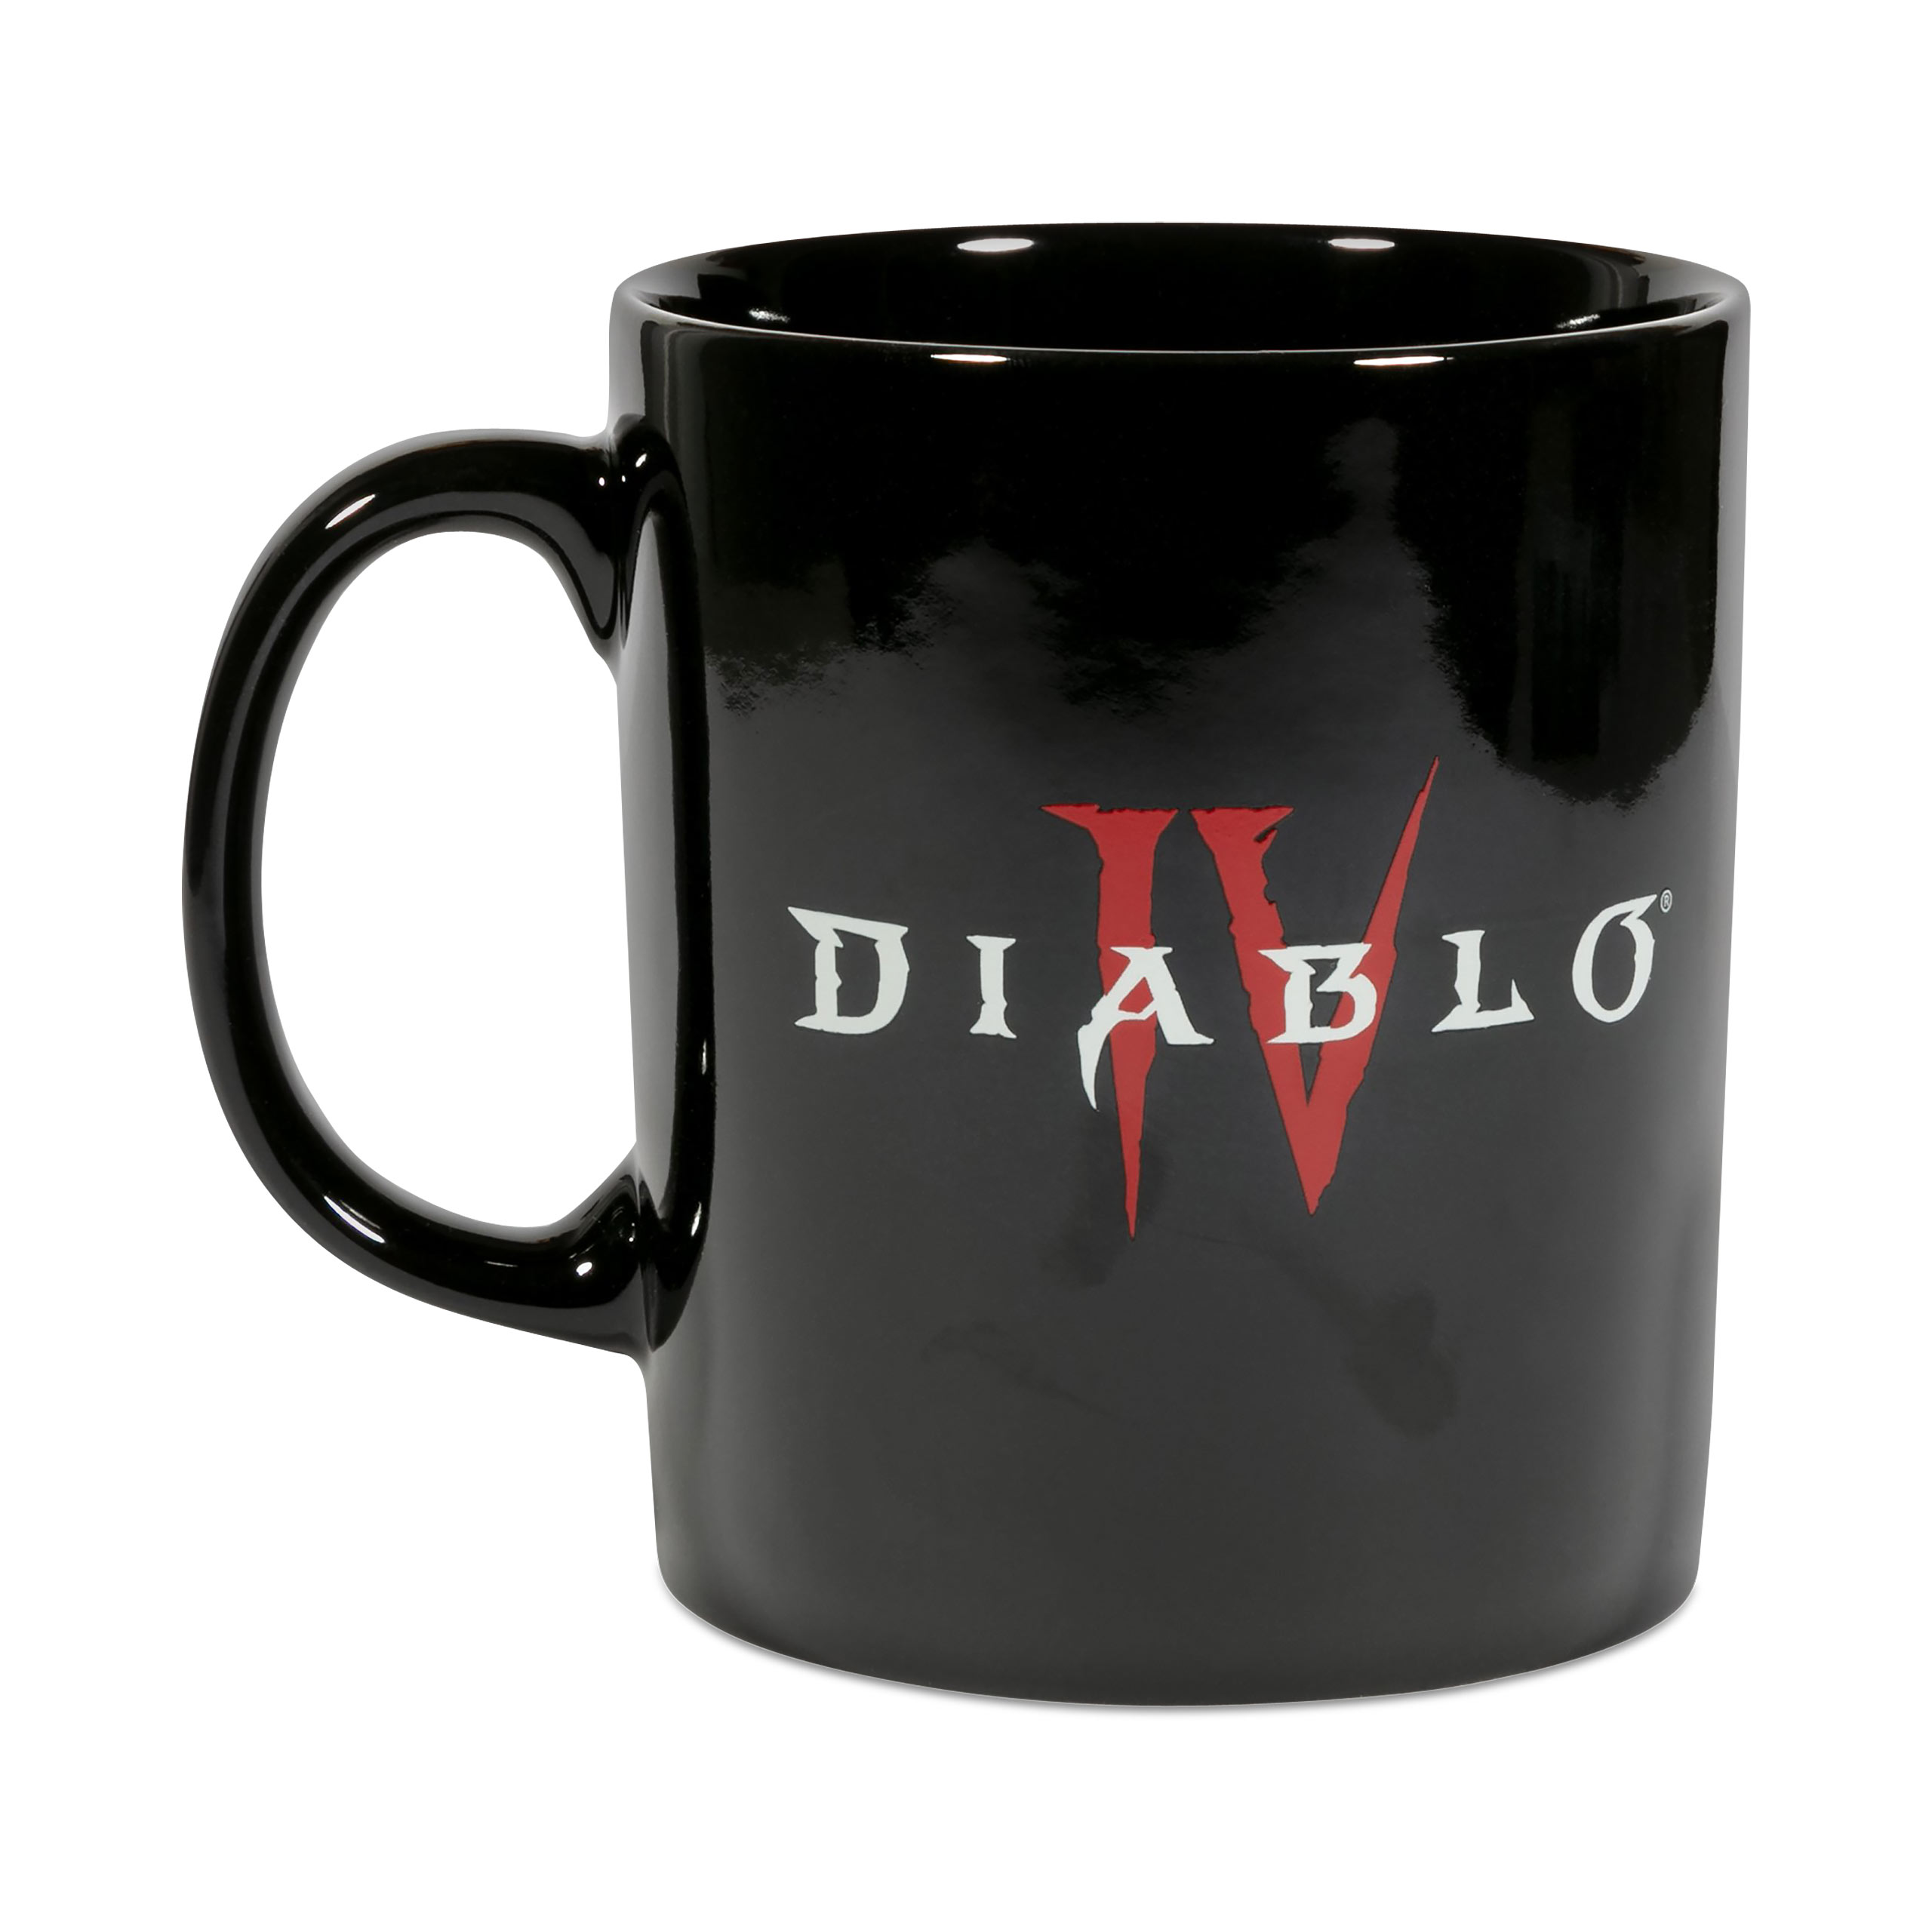 Diablo IV - Hotter Than Hell Tasse schwarz